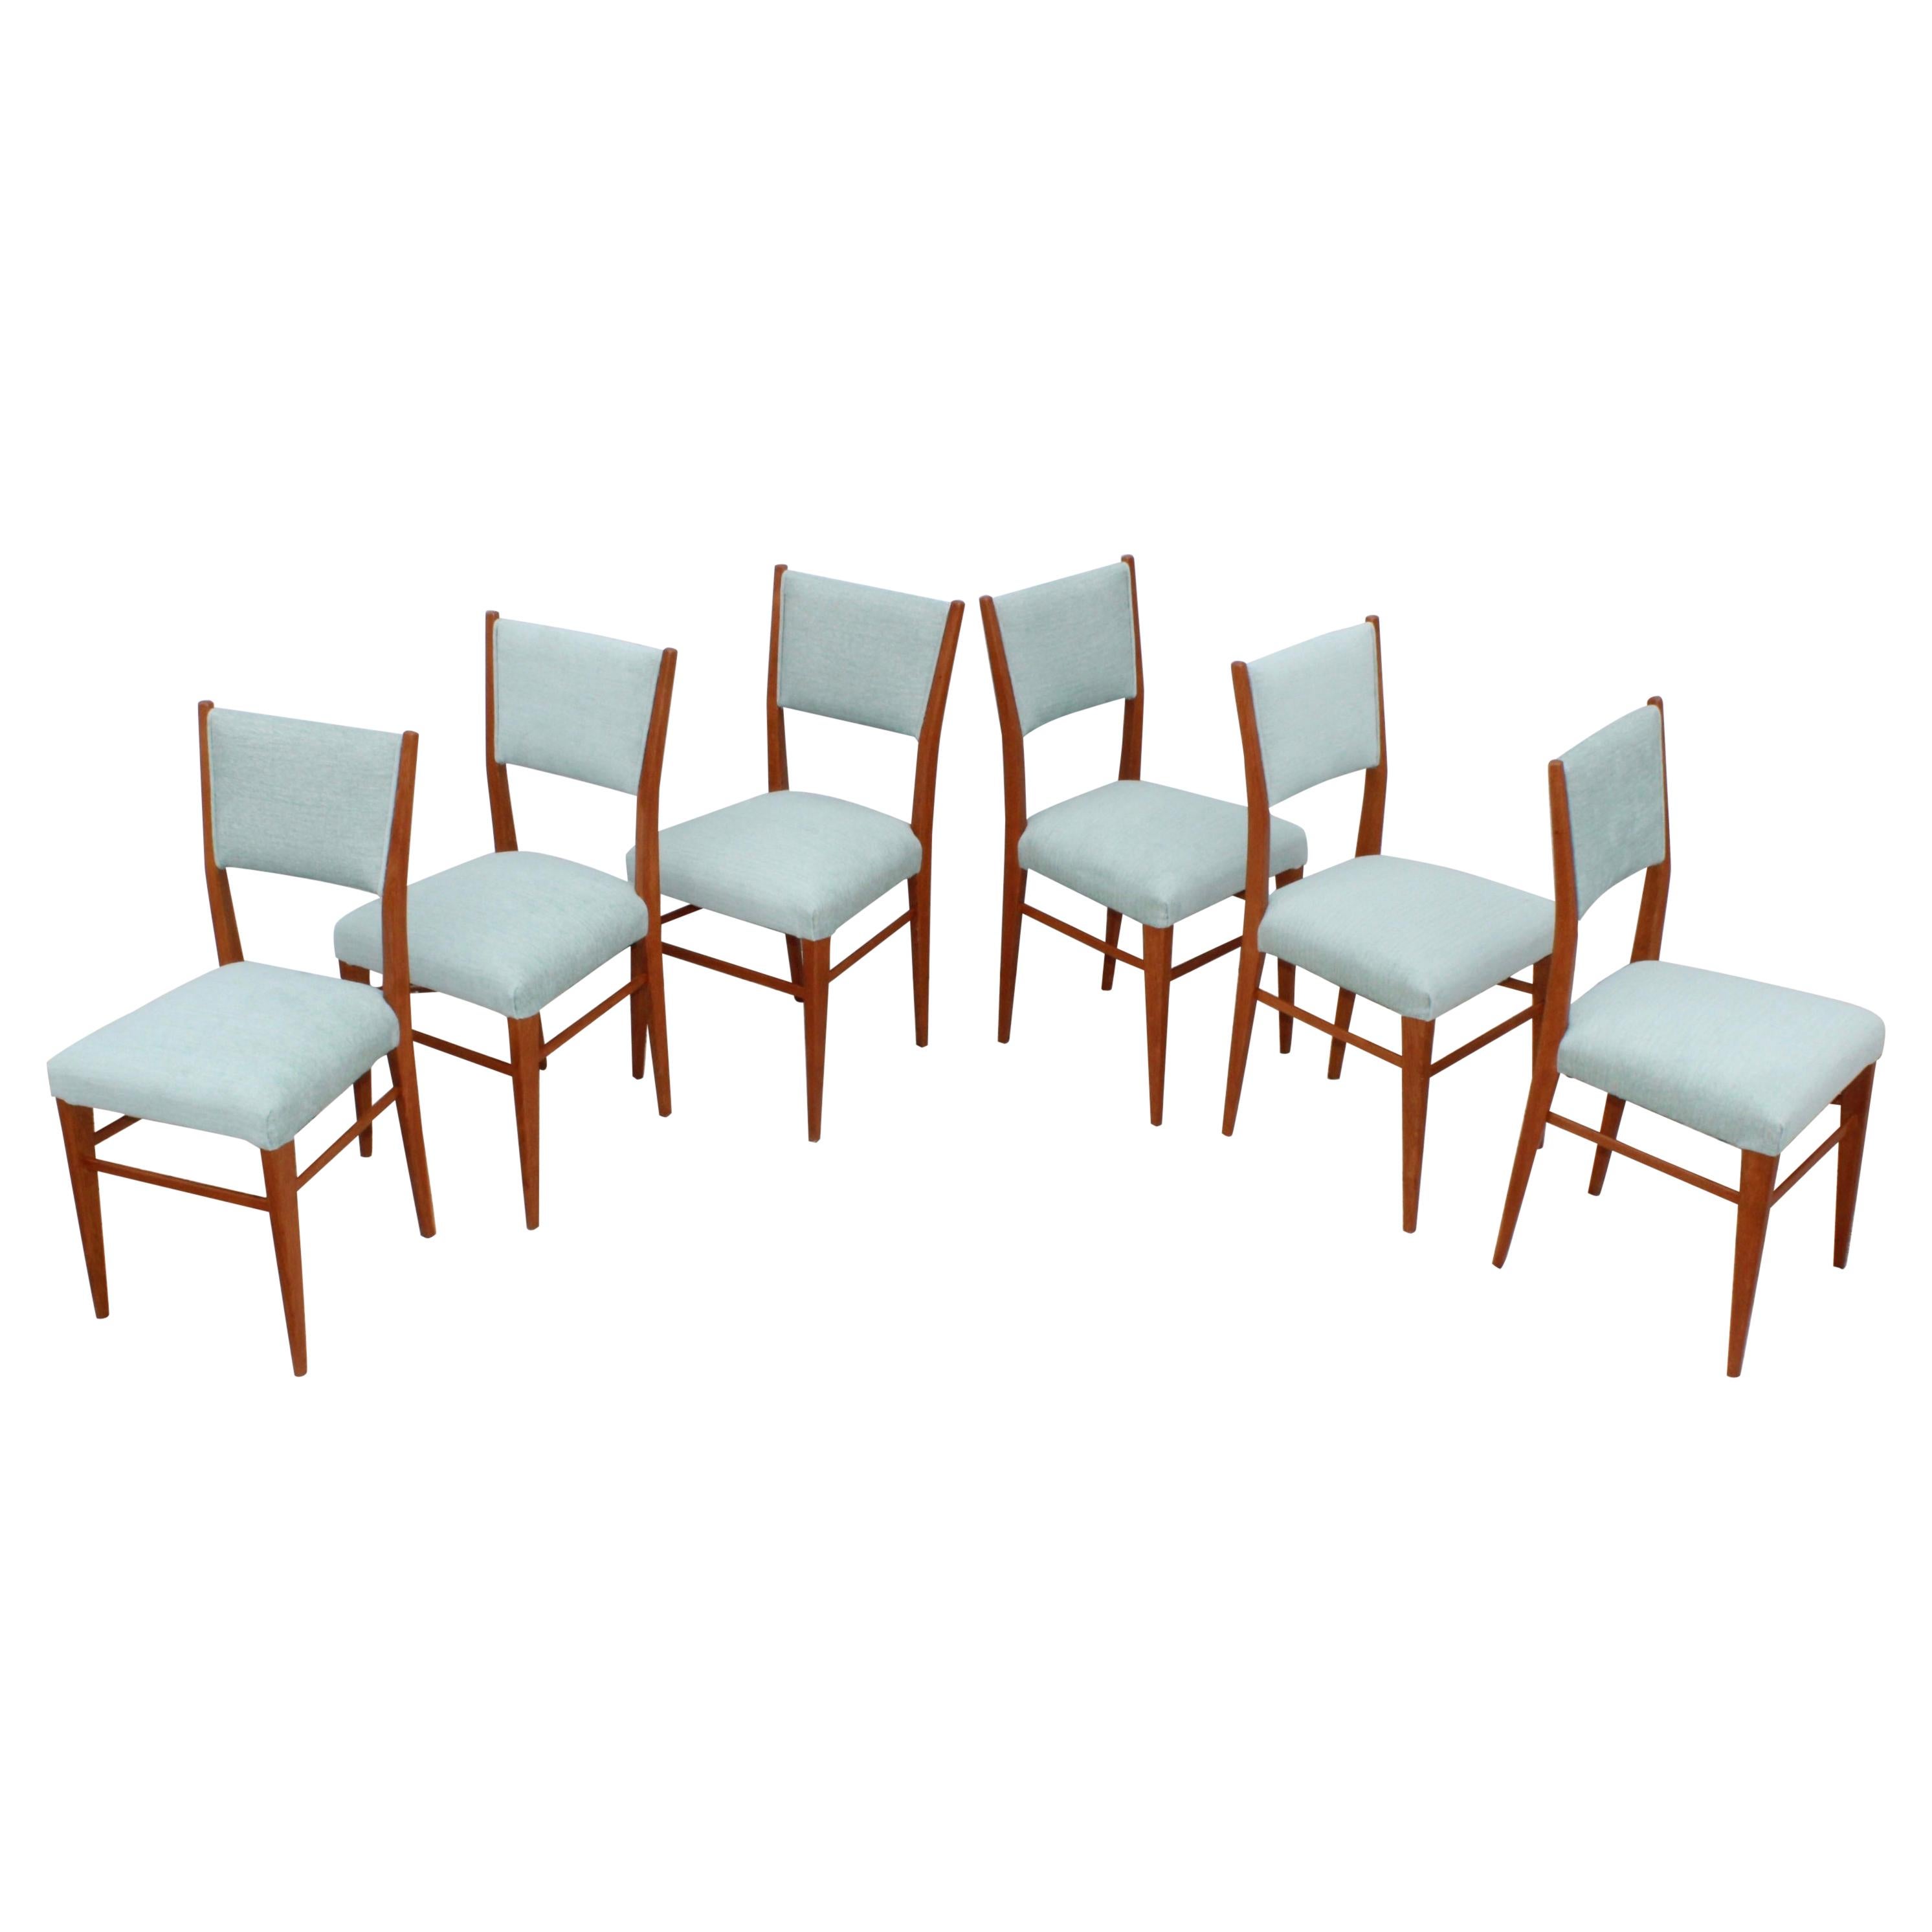 1960's Mid-Century Modern Oak Italian Dining Chairs